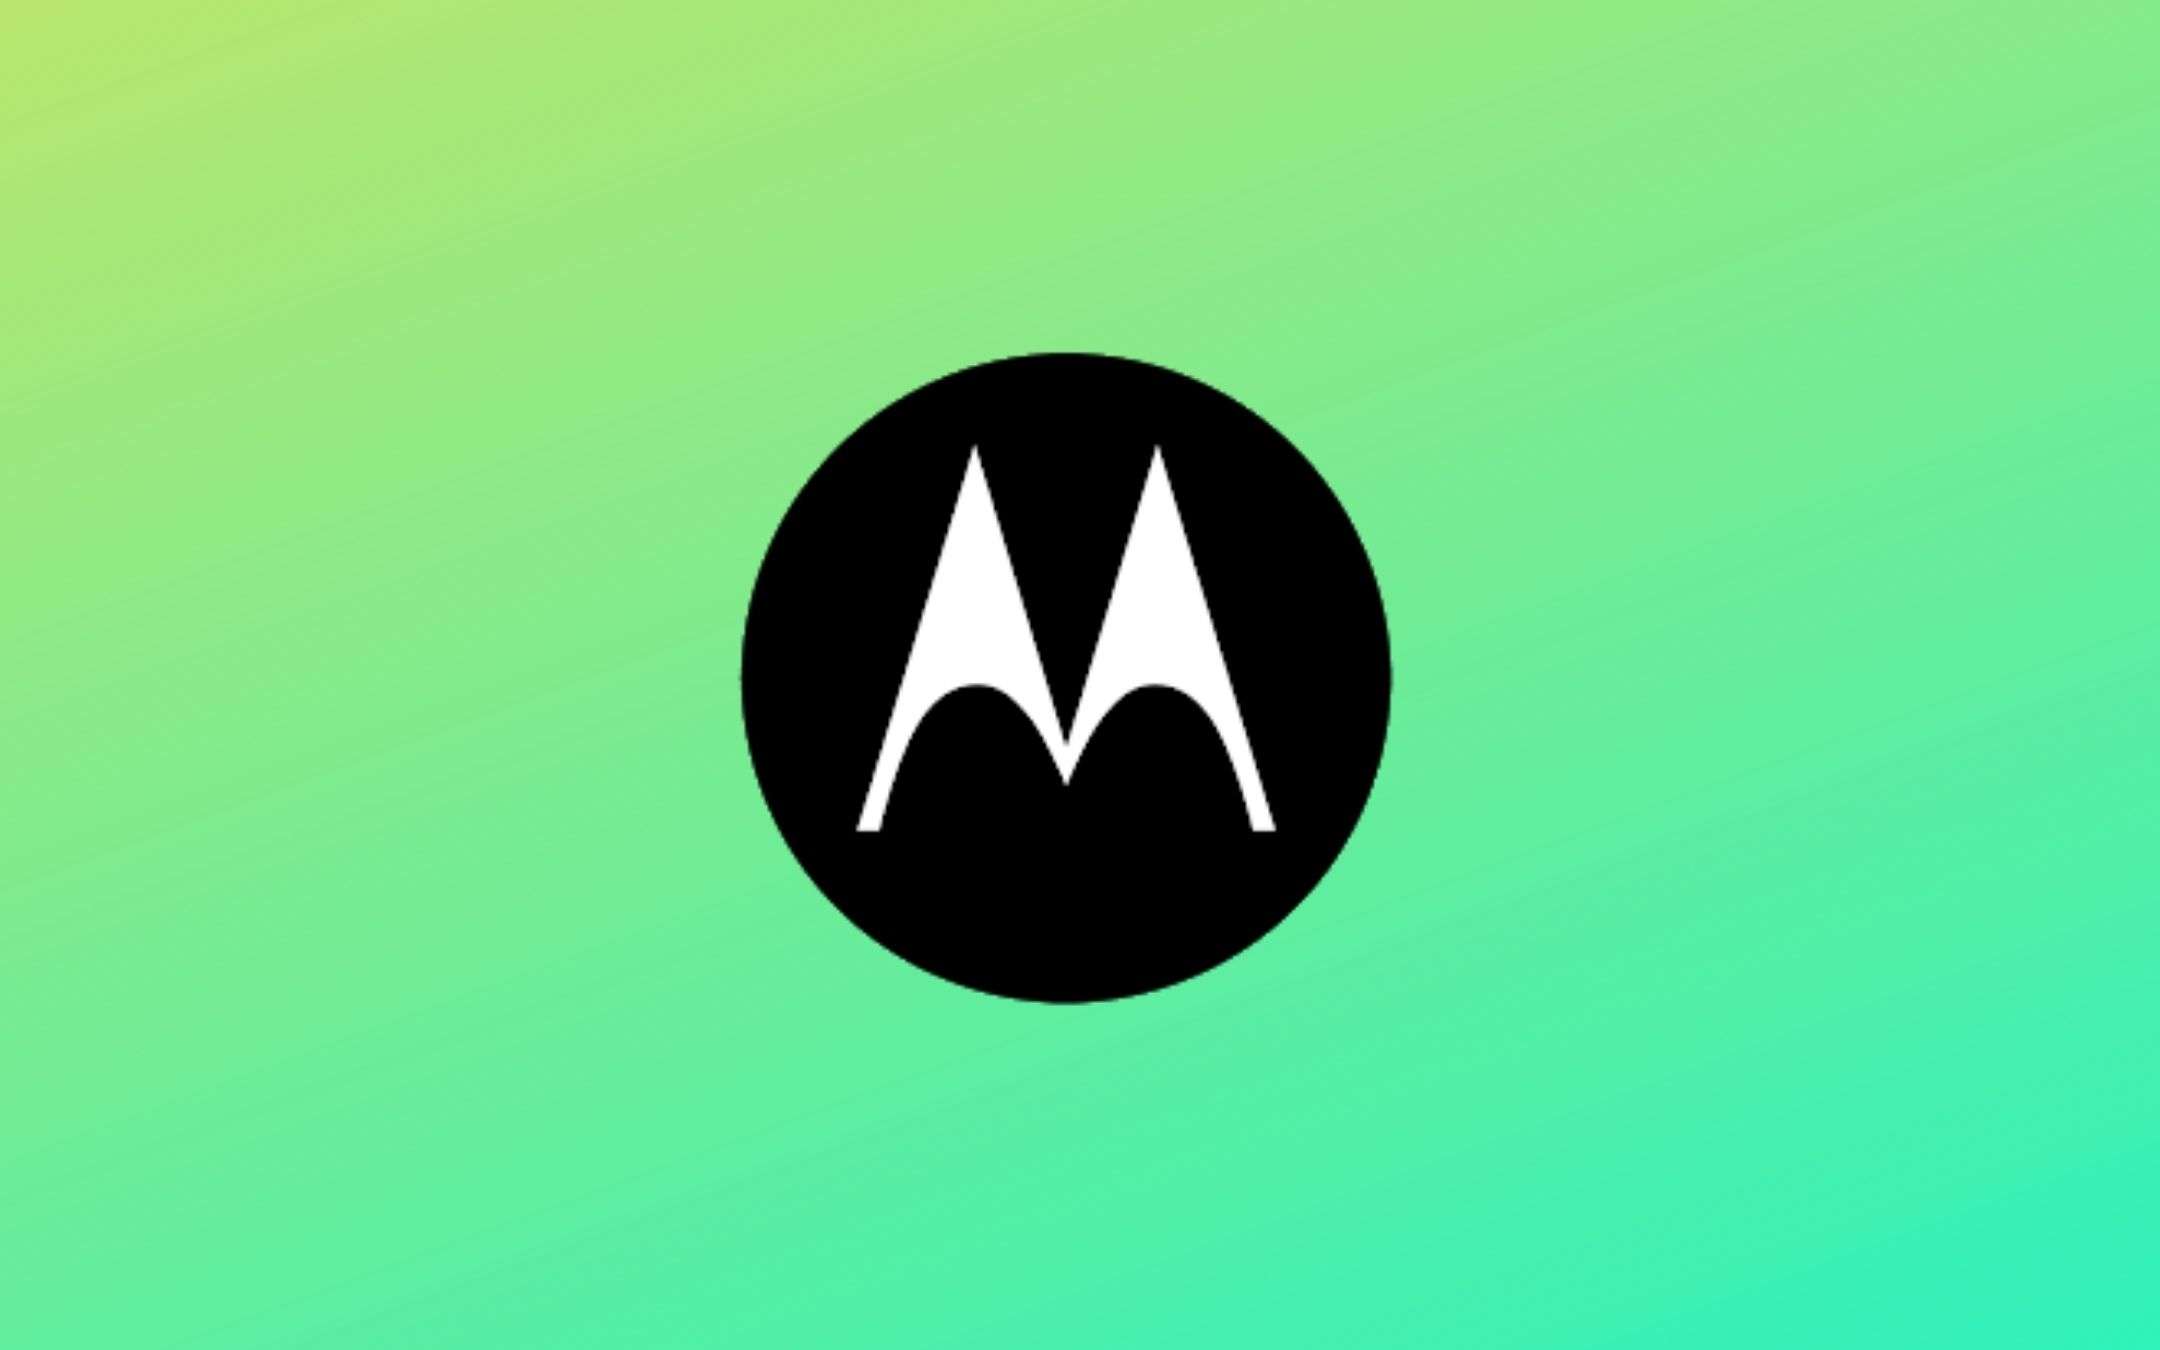 Motorola Capri riceve la certificazione FCC